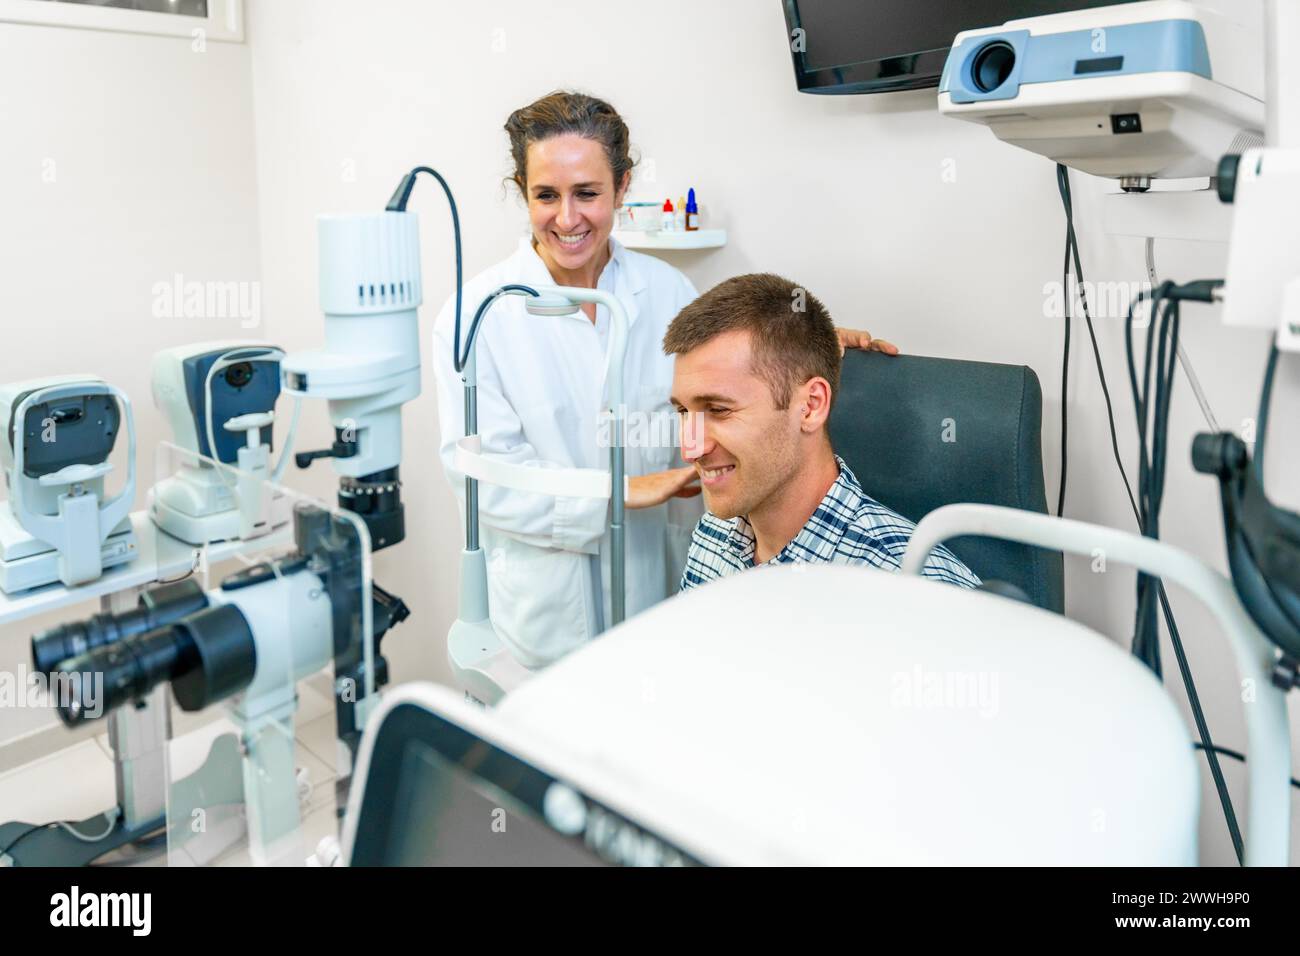 Homme souriant sur un rendez-vous médical avec une ophtalmologiste Banque D'Images